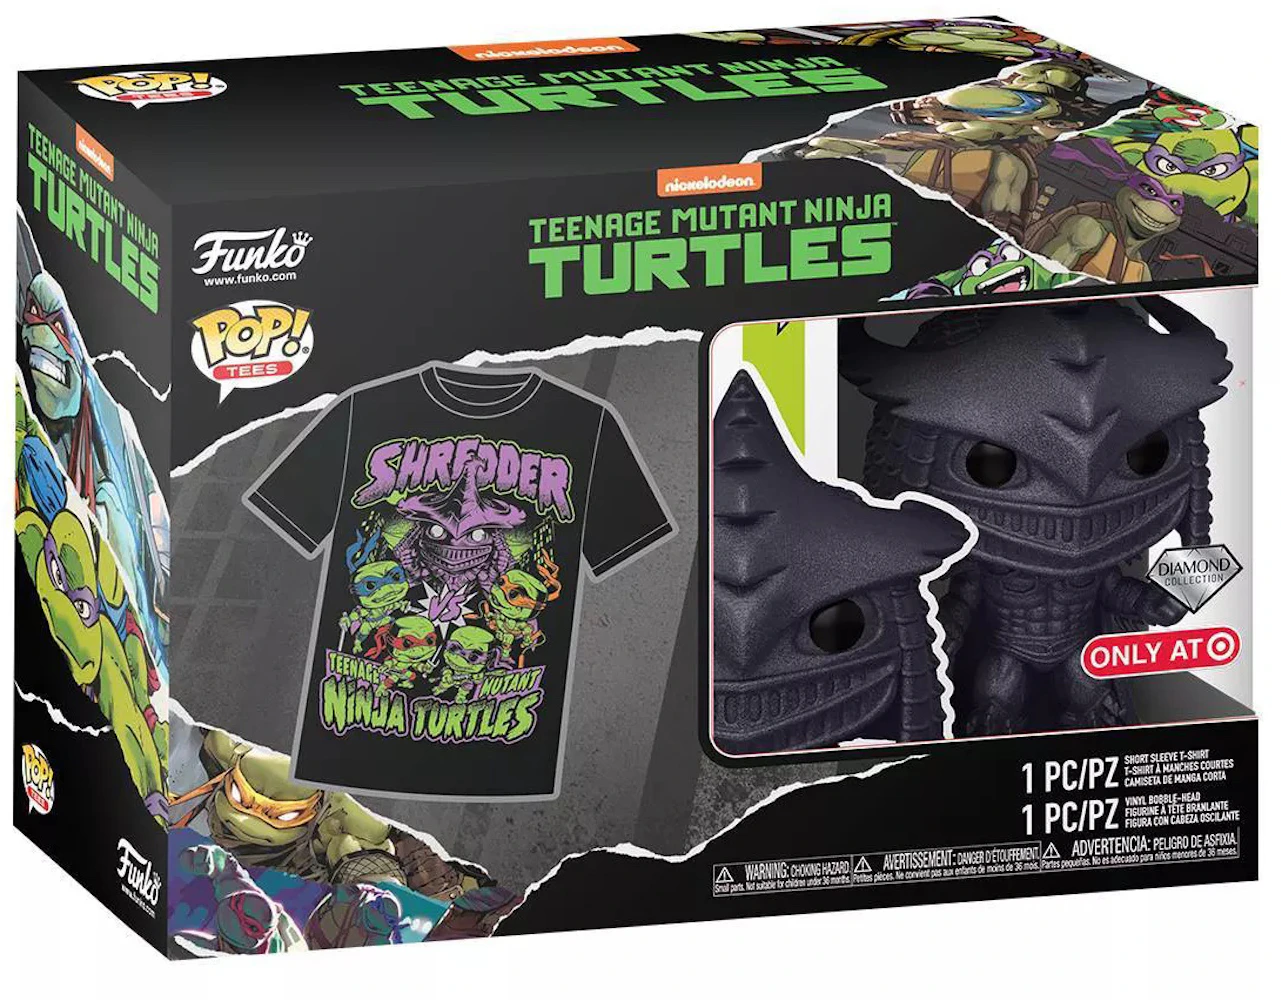 Teenage Mutant Ninja Turtles Retro Sun Group Teenage Mutant Ninja Turtles Essential T-Shirt | Redbubble